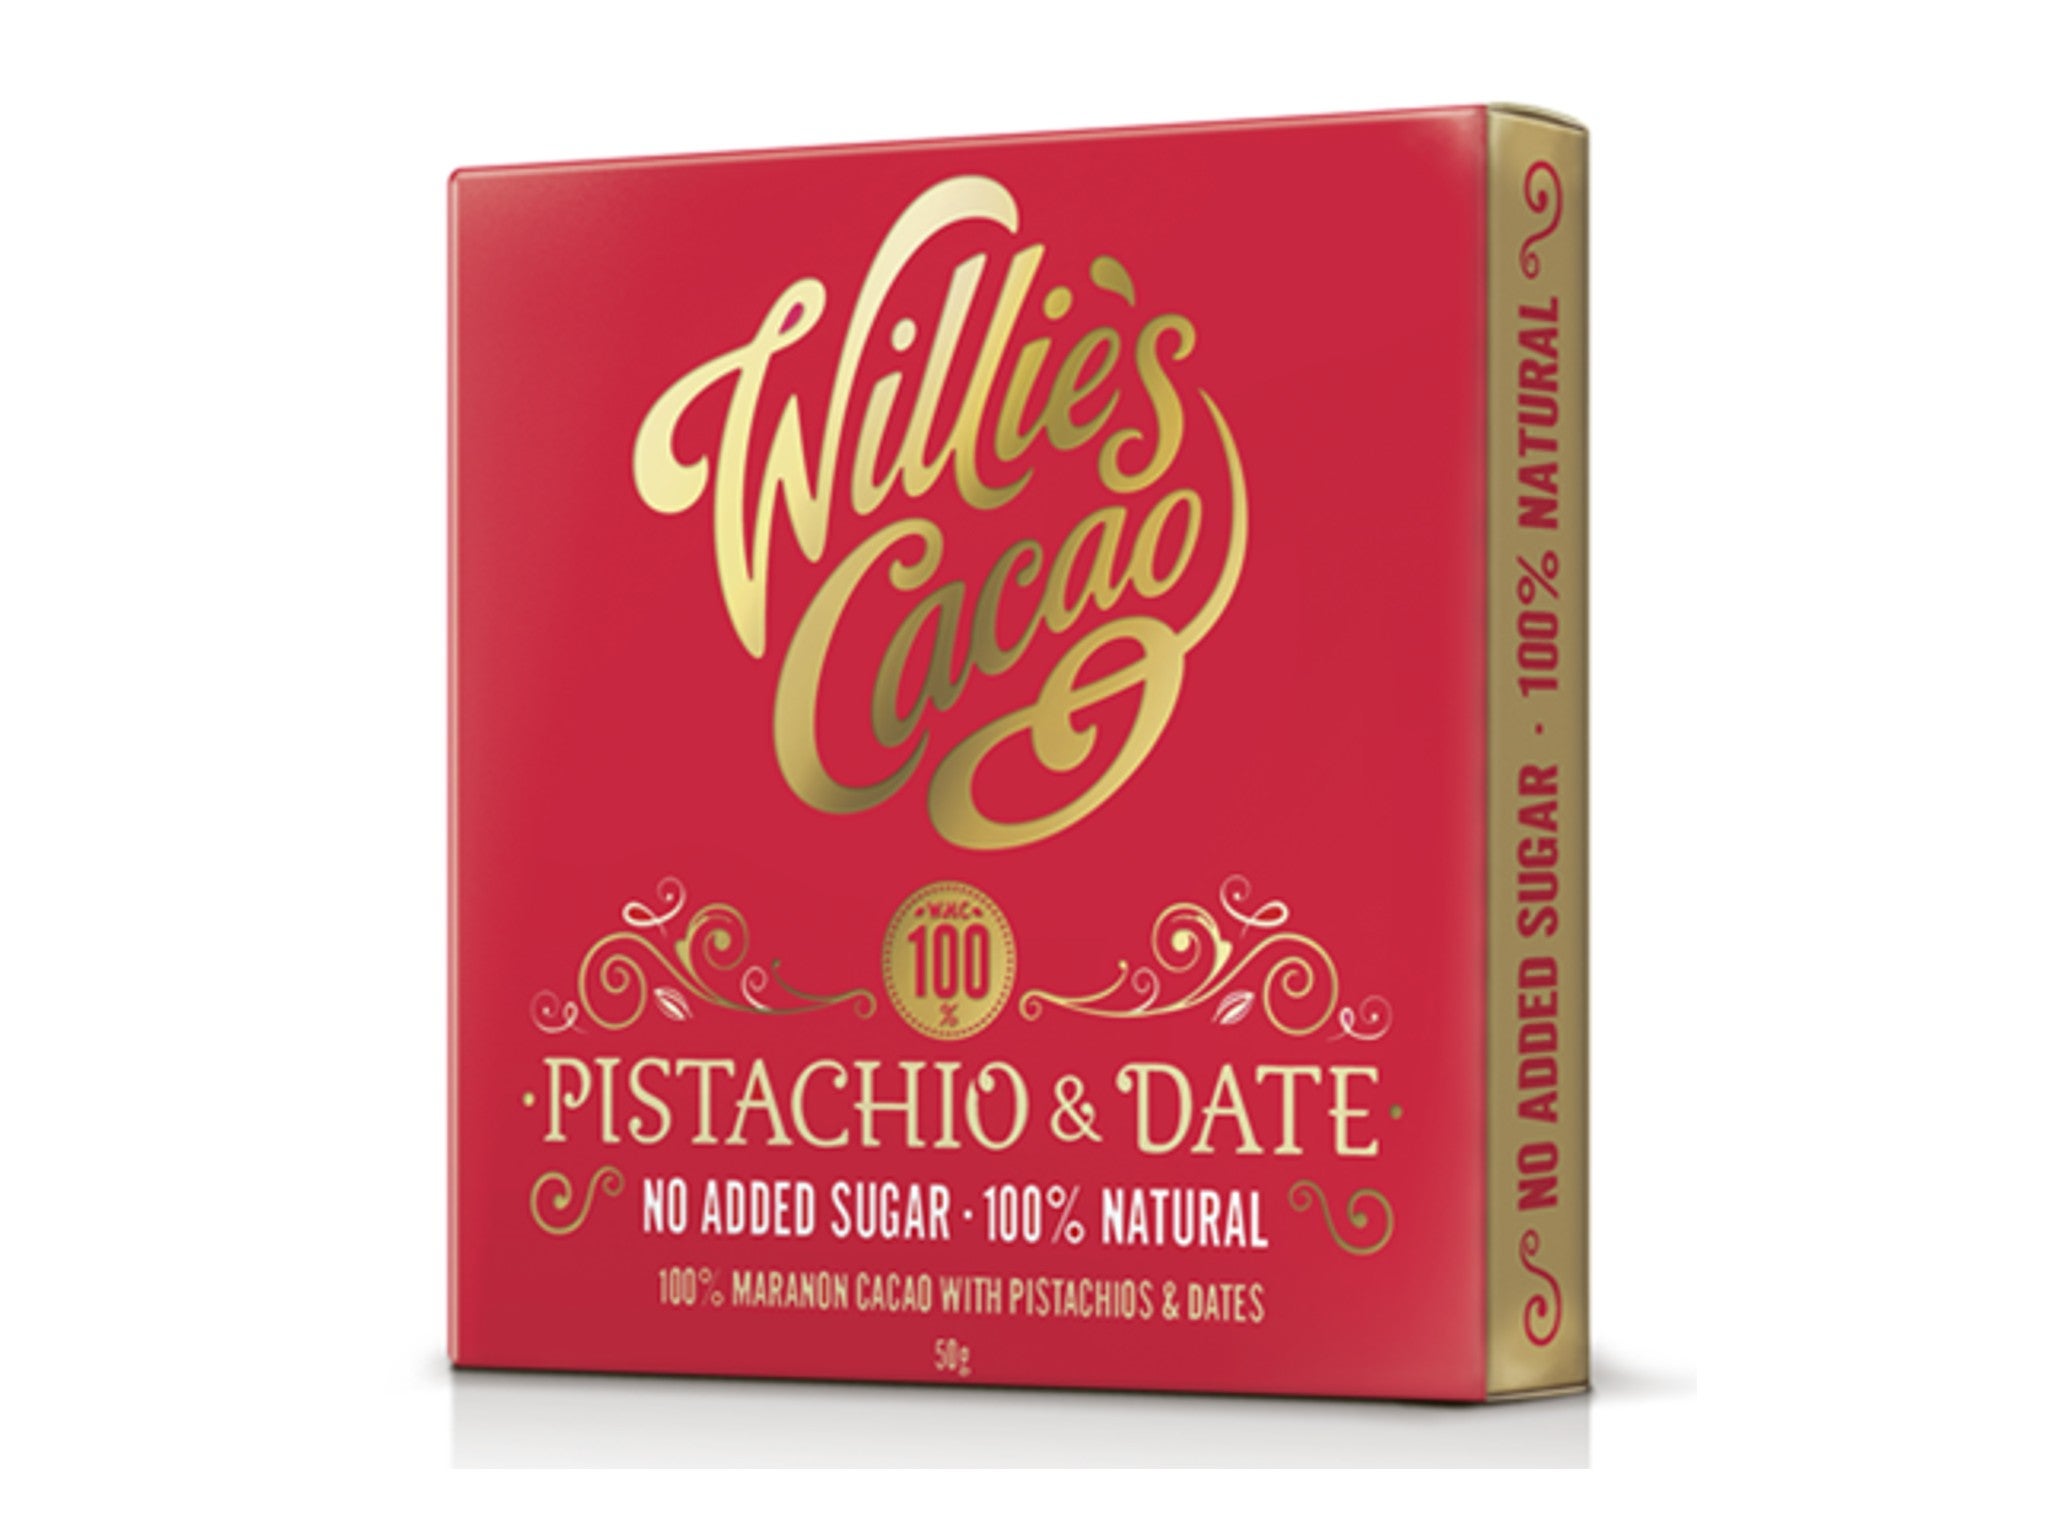 Willie’s Cacao pistachio & date 100% dark chocolate, 50g indybest.jpg